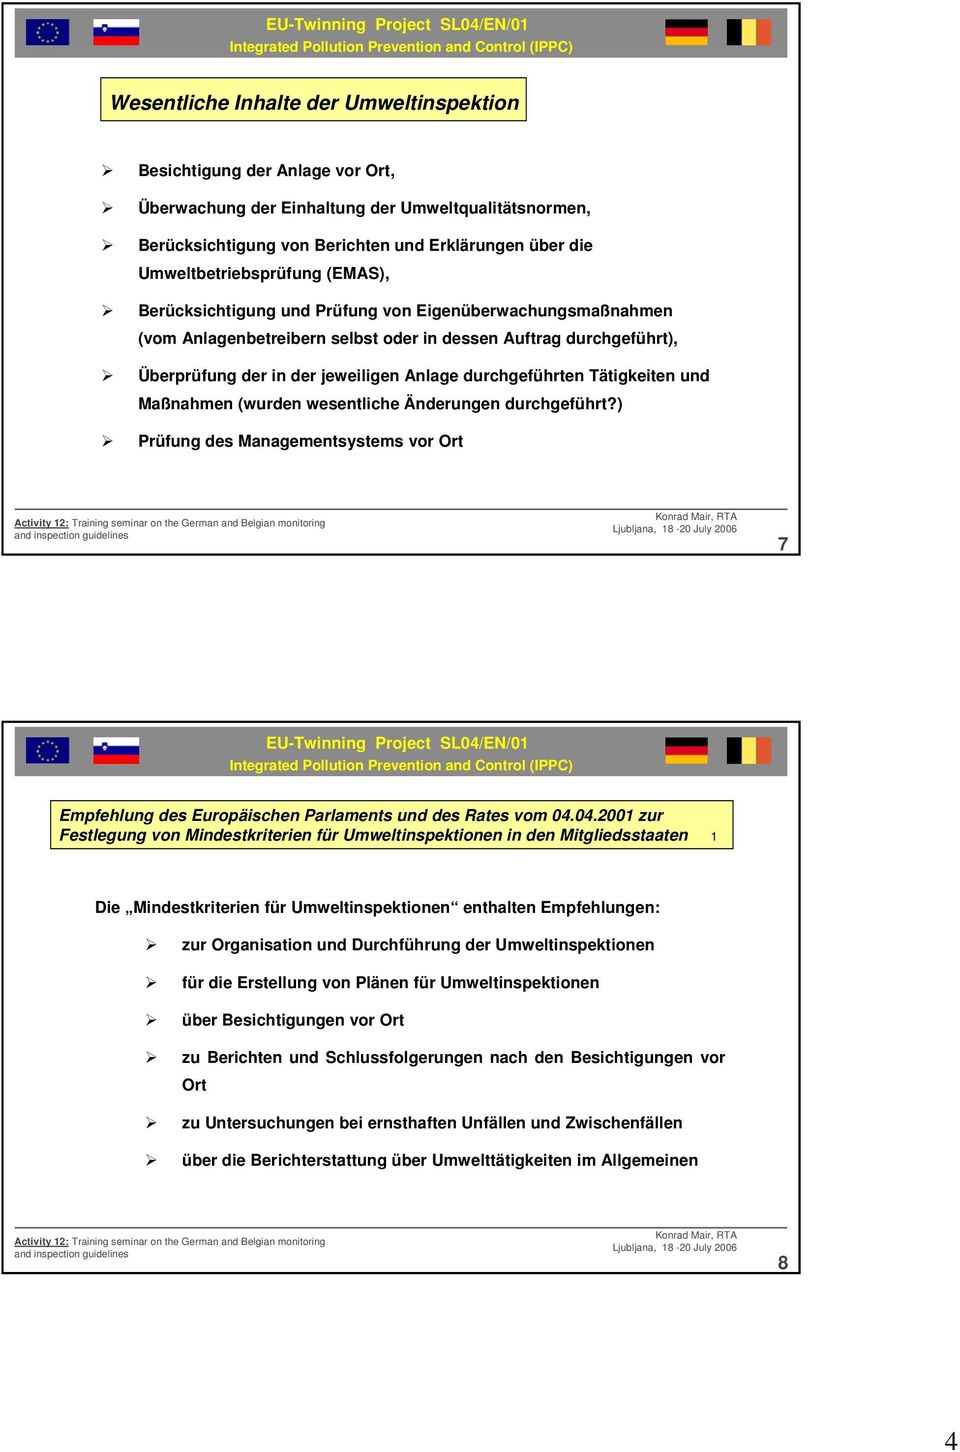 durchgeführten Tätigkeiten und Maßnahmen (wurden wesentliche Änderungen durchgeführt?) Prüfung des Managementsystems vor Ort 7 Empfehlung des Europäischen Parlaments und des Rates vom 04.